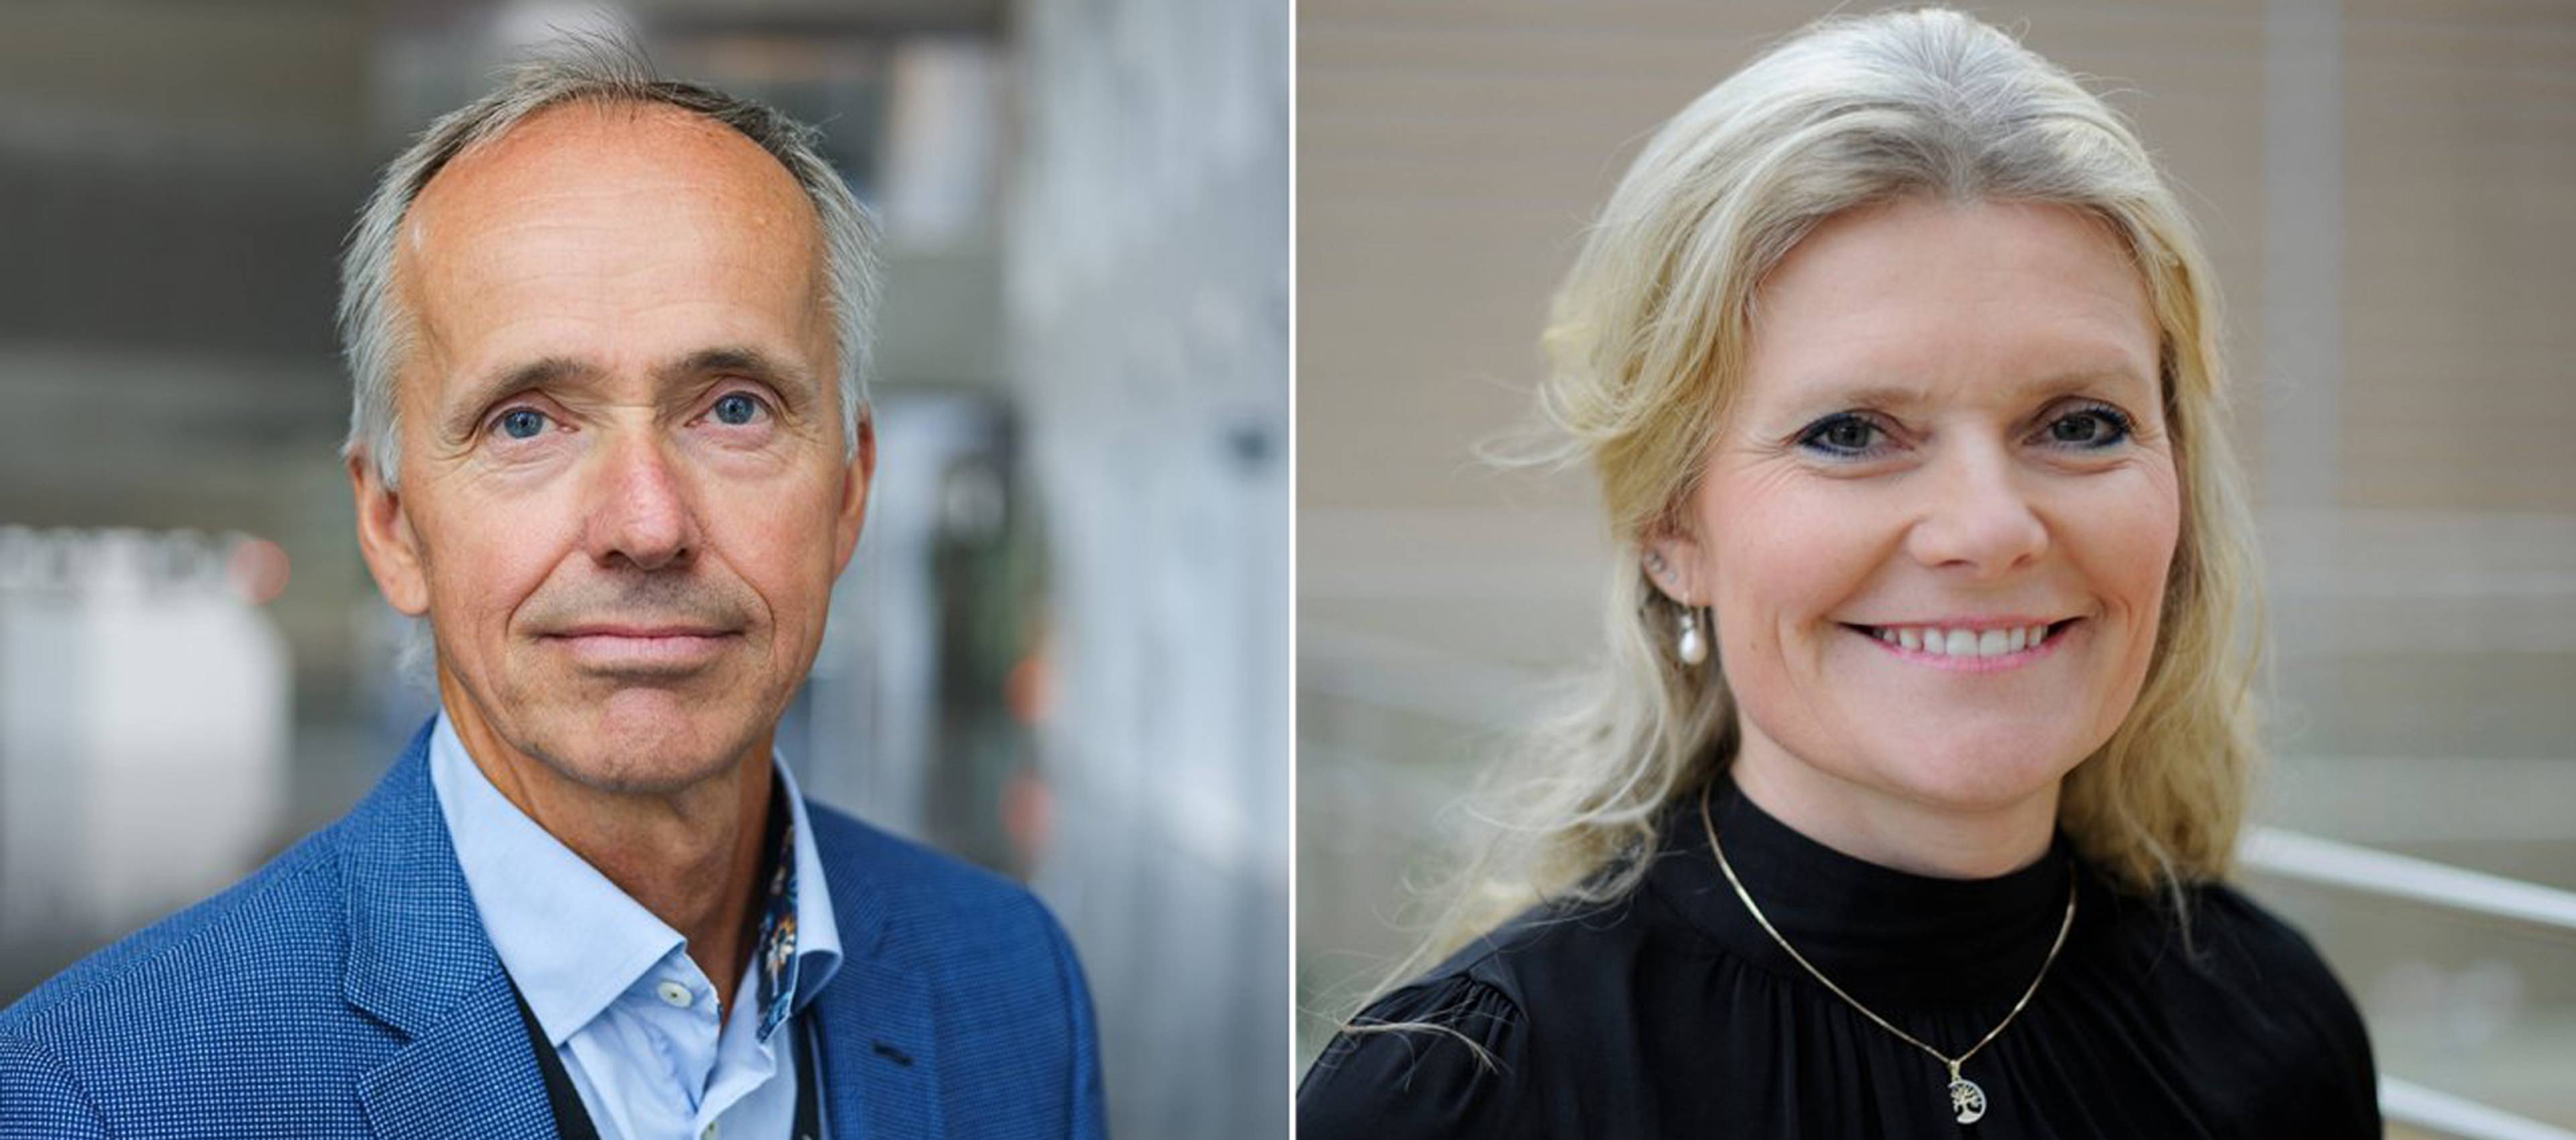 Sverre Overå (links), Northern Lights-Projektleiter, und Peggy Krantz-Underland, Equinor’s Chief Procurement Officer.